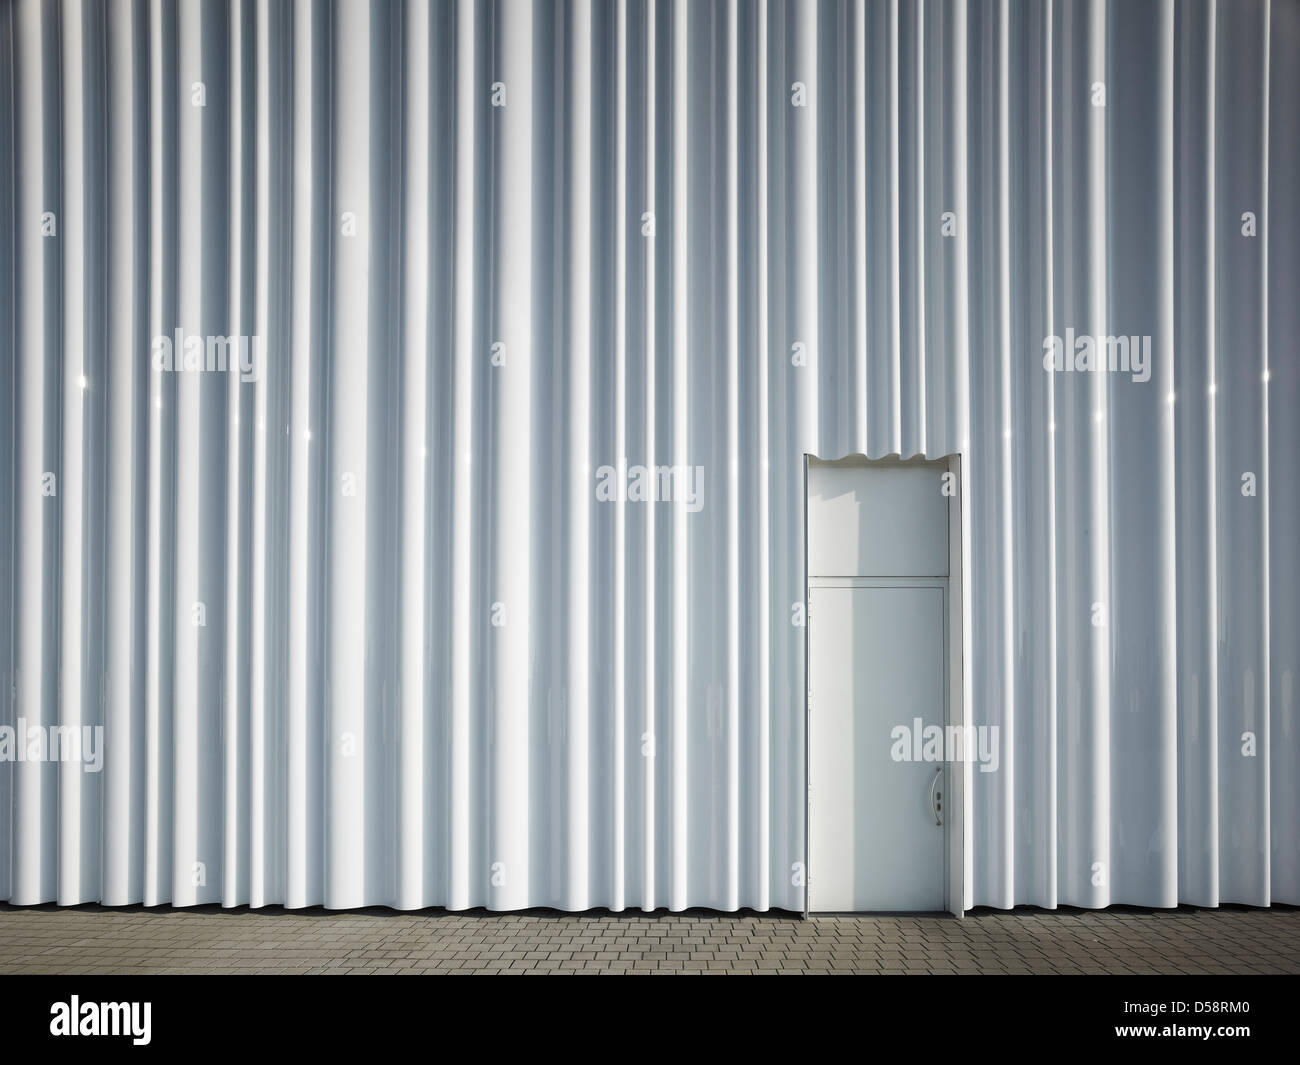 Logistikhalle bei Vitra Campus, am Weil Rhein, Deutschland. Architekt: SANAA, 2012. Plexiglas-Fassade mit Tür. Stockfoto